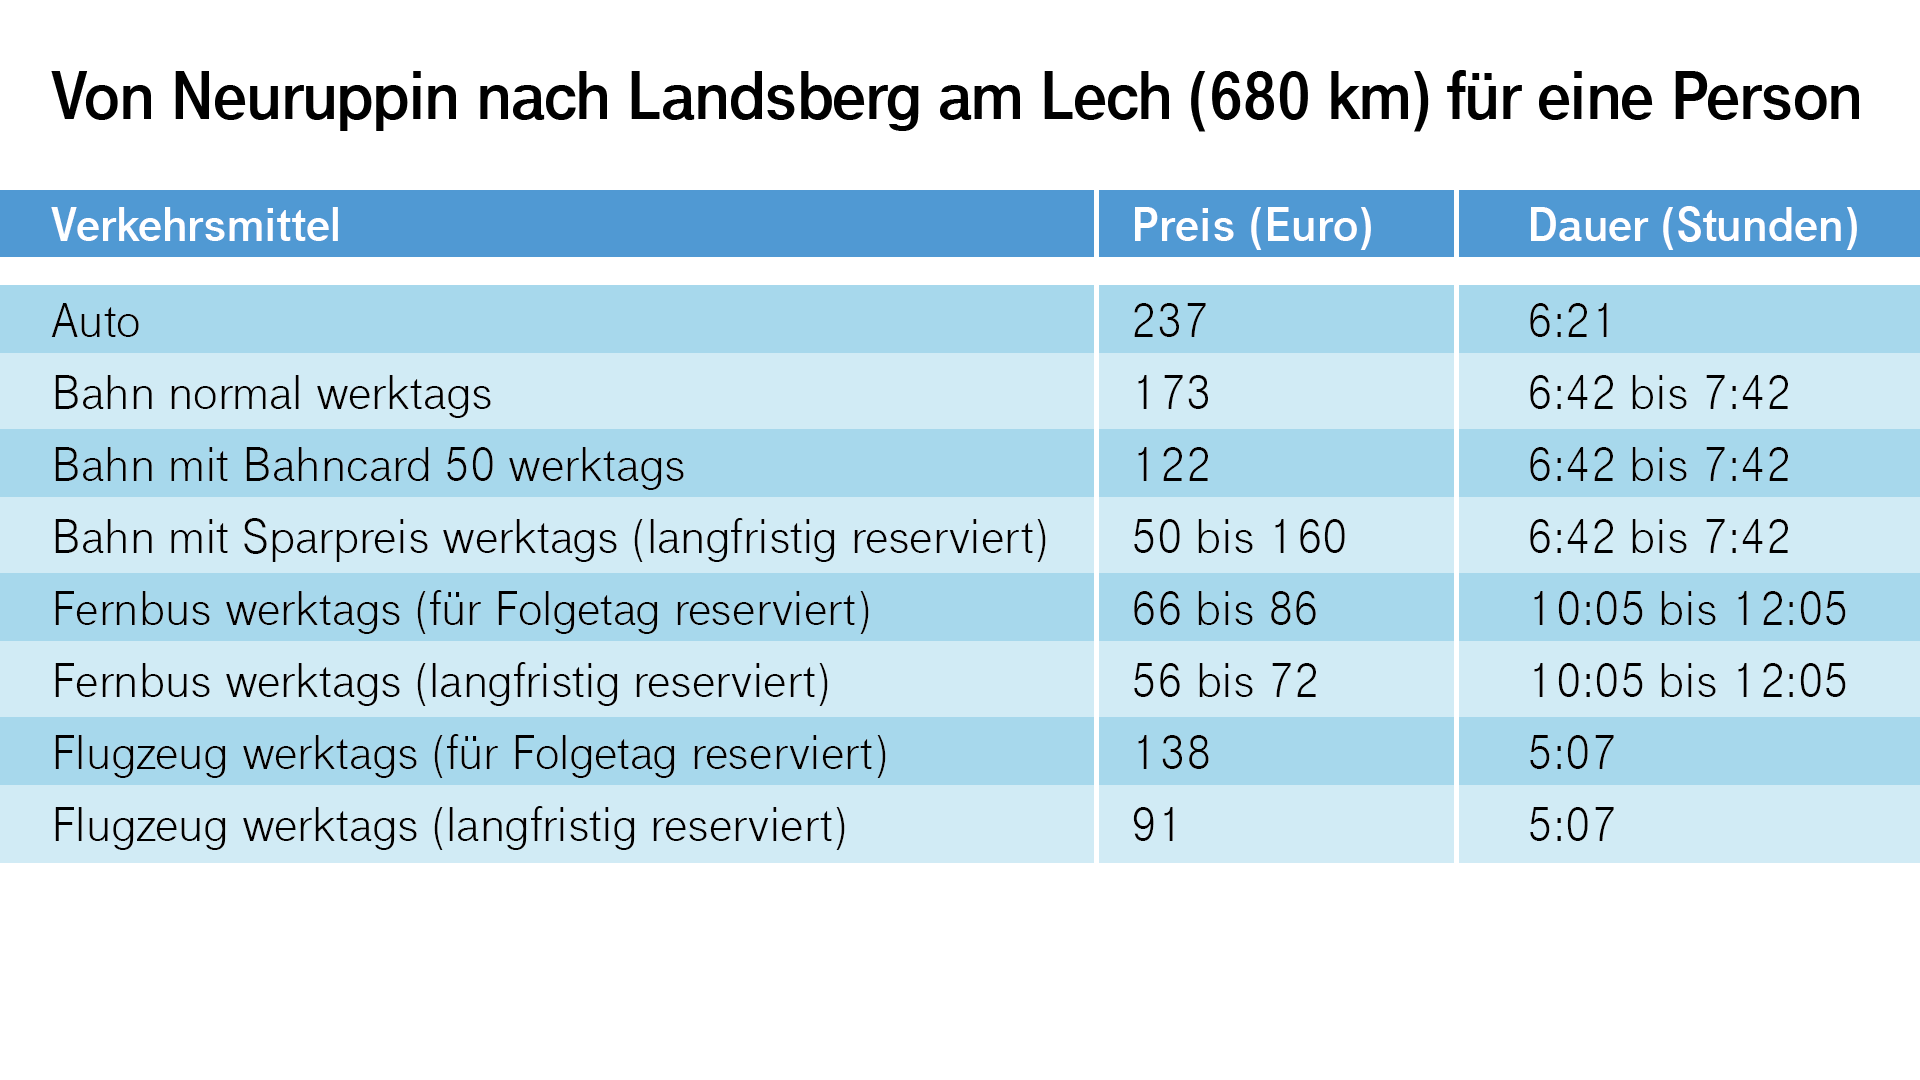 Von Neuruppin nach Landsberg am Lech für eine Person: Das Flugzeug ist auch hier am schnellsten, büßt aber viel von seinem Zeitvorteil ein. Denn der Weg zum und vom Flughafen ist aufwendig.